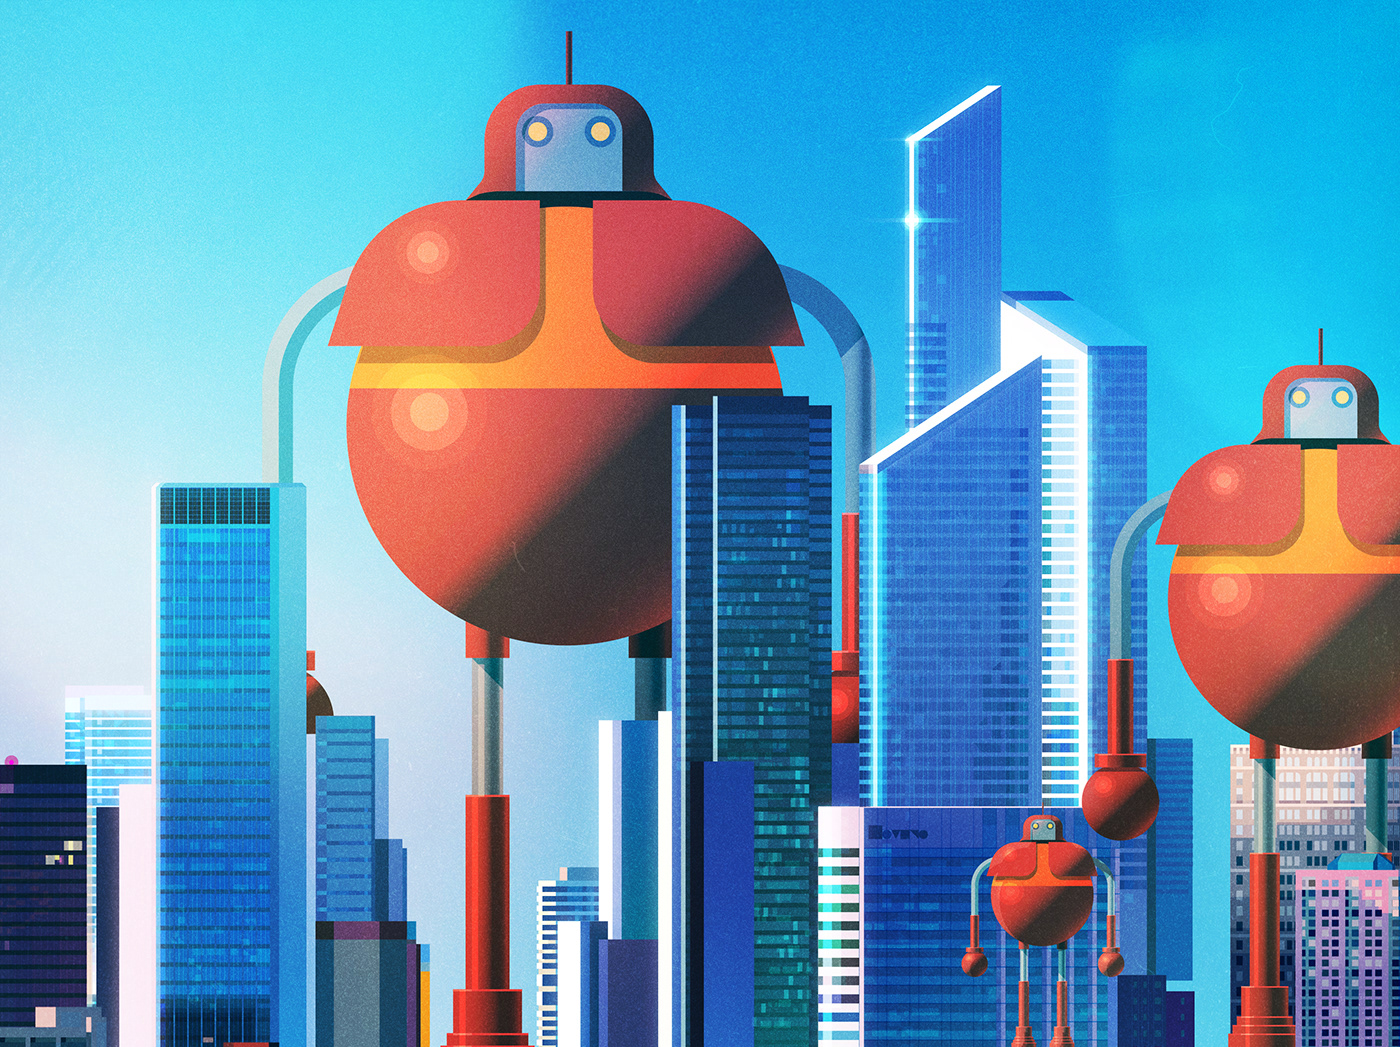 animation  Character design  concept art Digital Art  james gilleard Netflix robots vector Visual Development